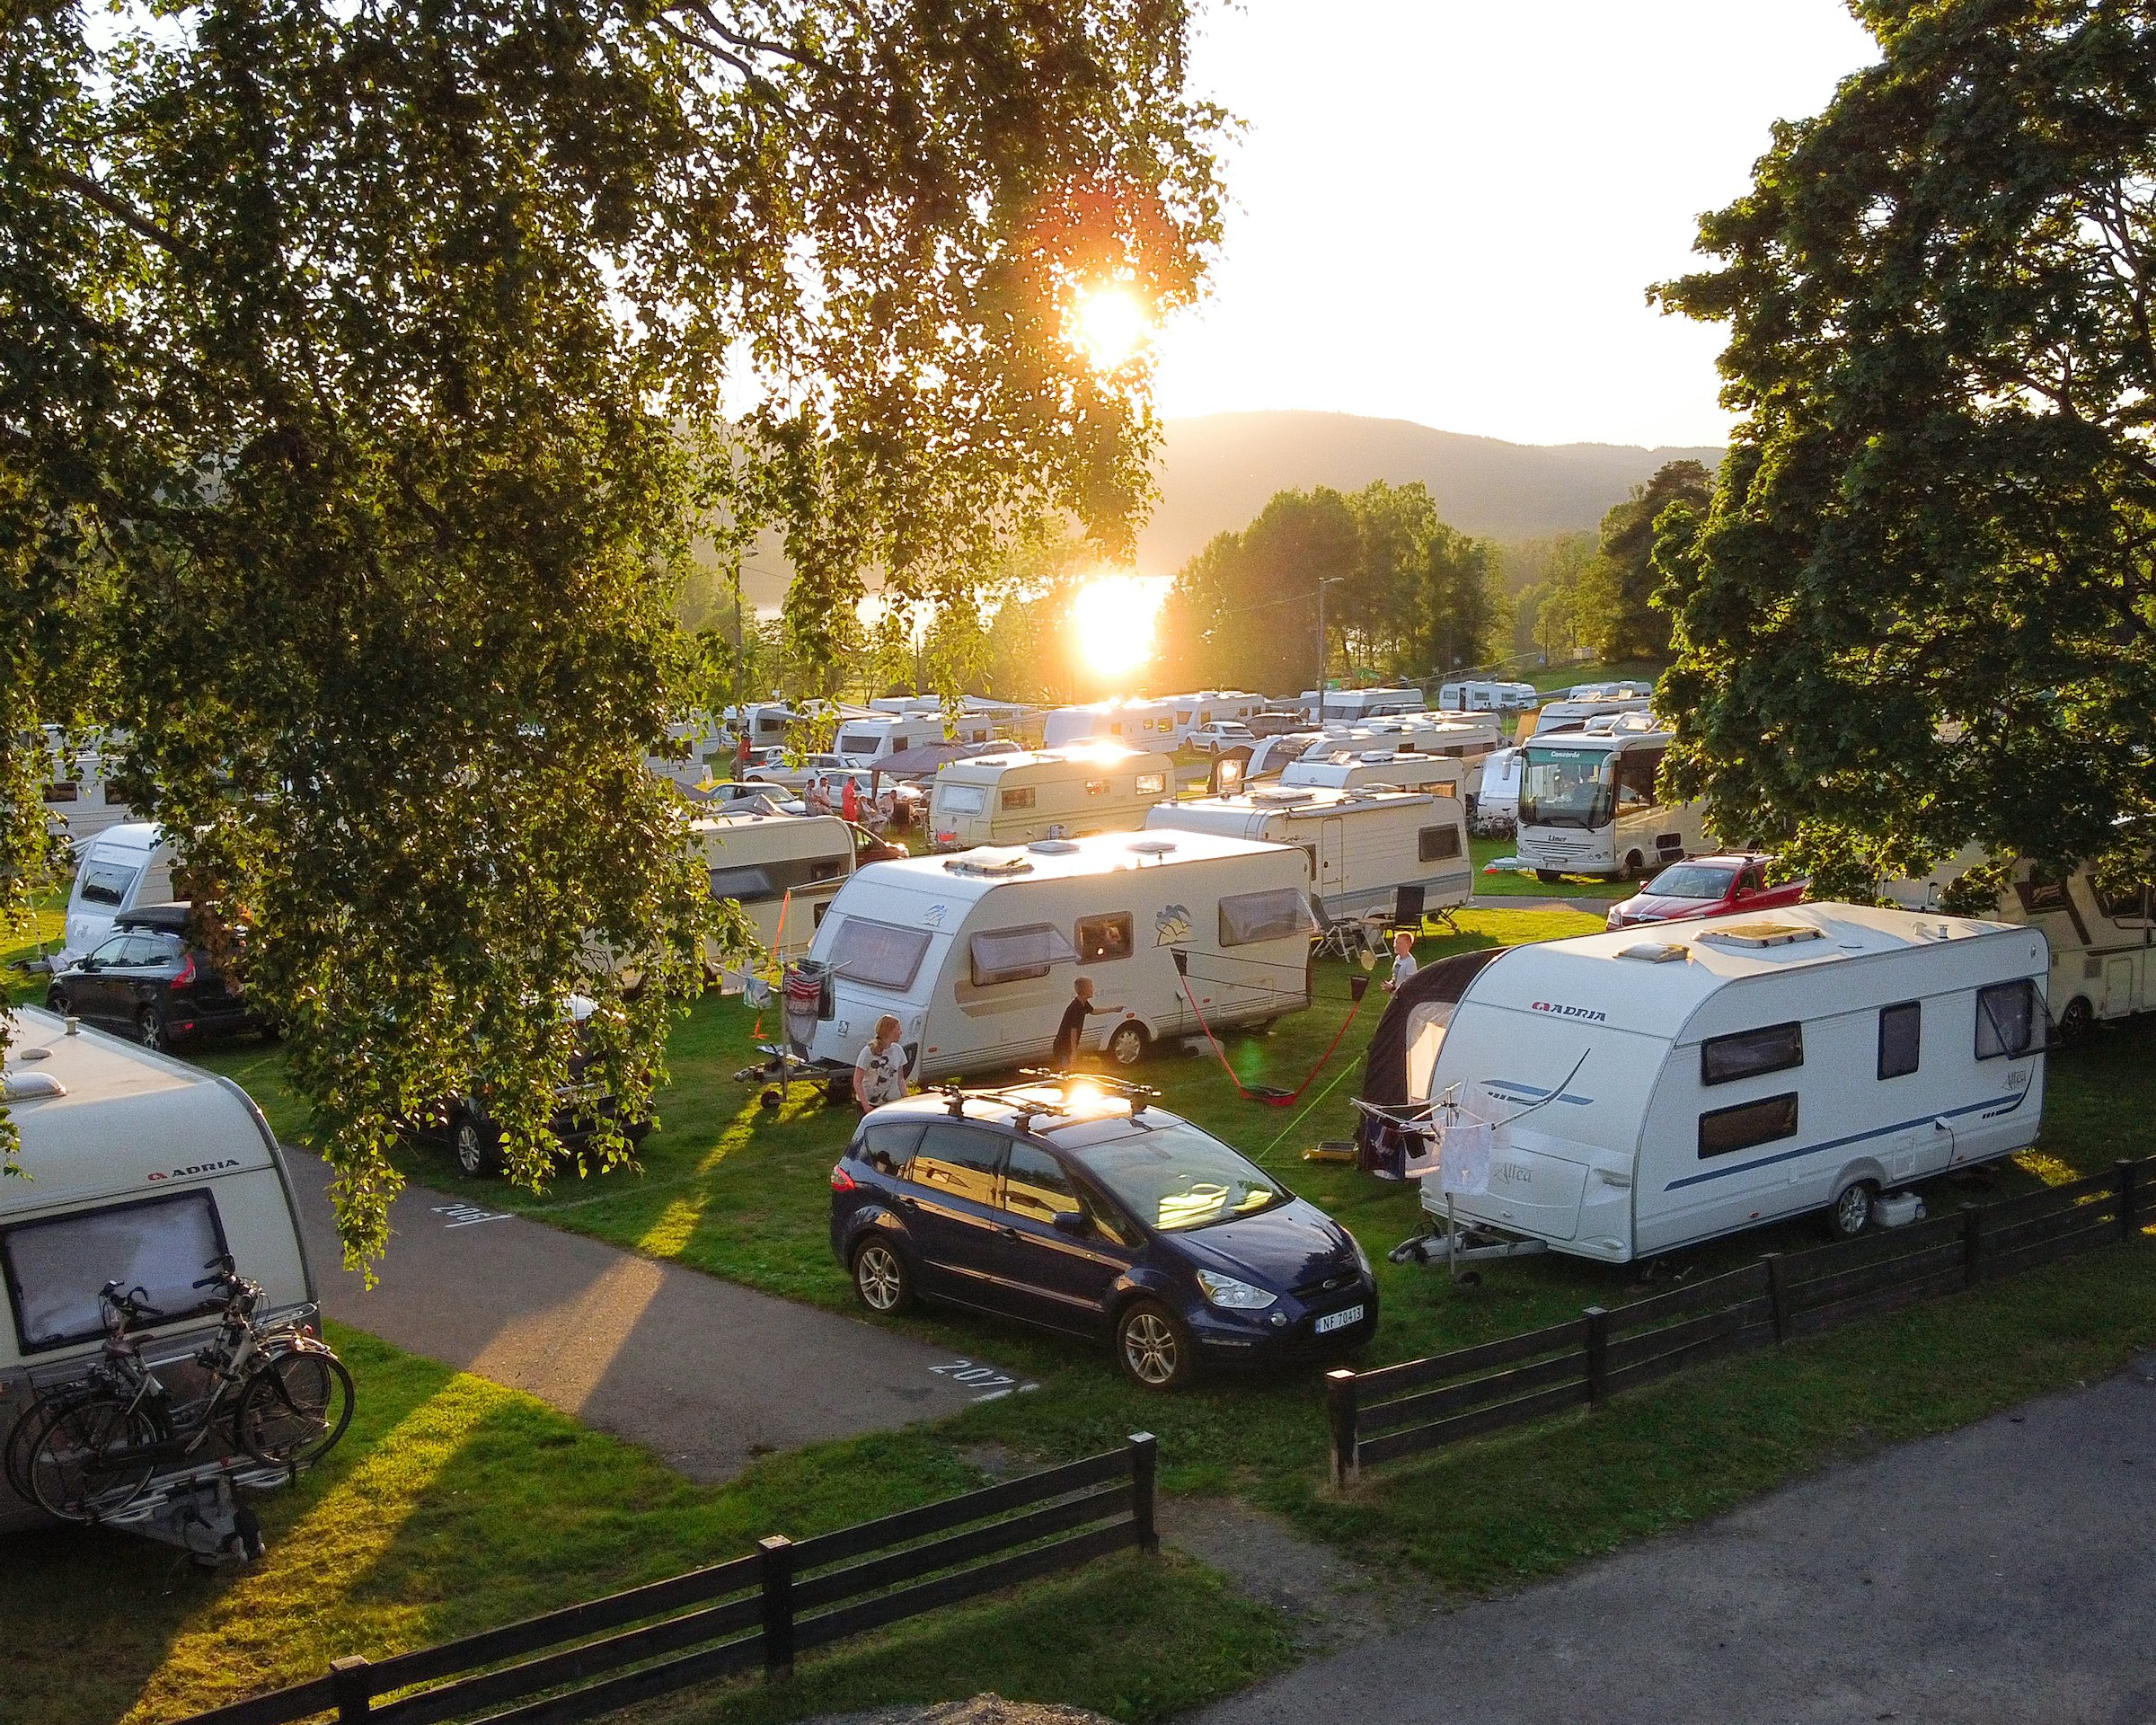 Mange campingvogner står oppstilt på campingplass, med solen som går ned i bakgrunnen. Foto